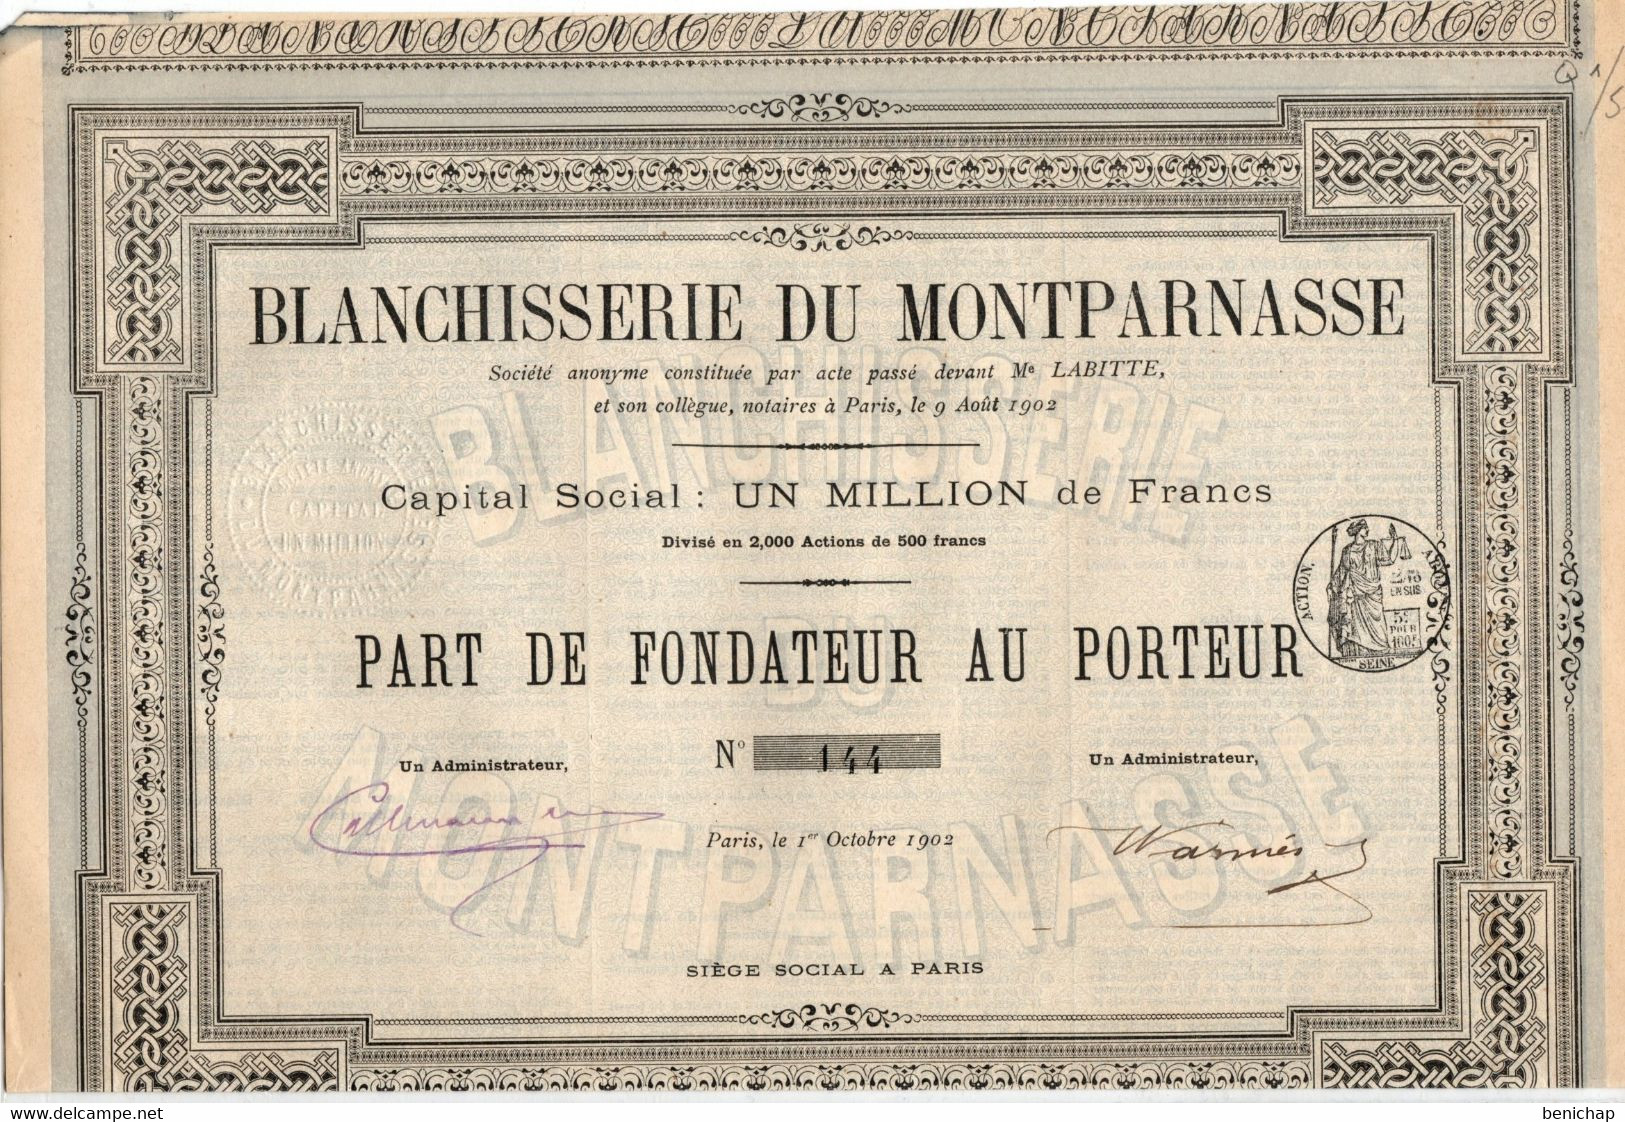 Blanchisserie Du Montparnasse S.A.- Part De Fondateur Au Porteur - Paris Octobre 1902. - Textil